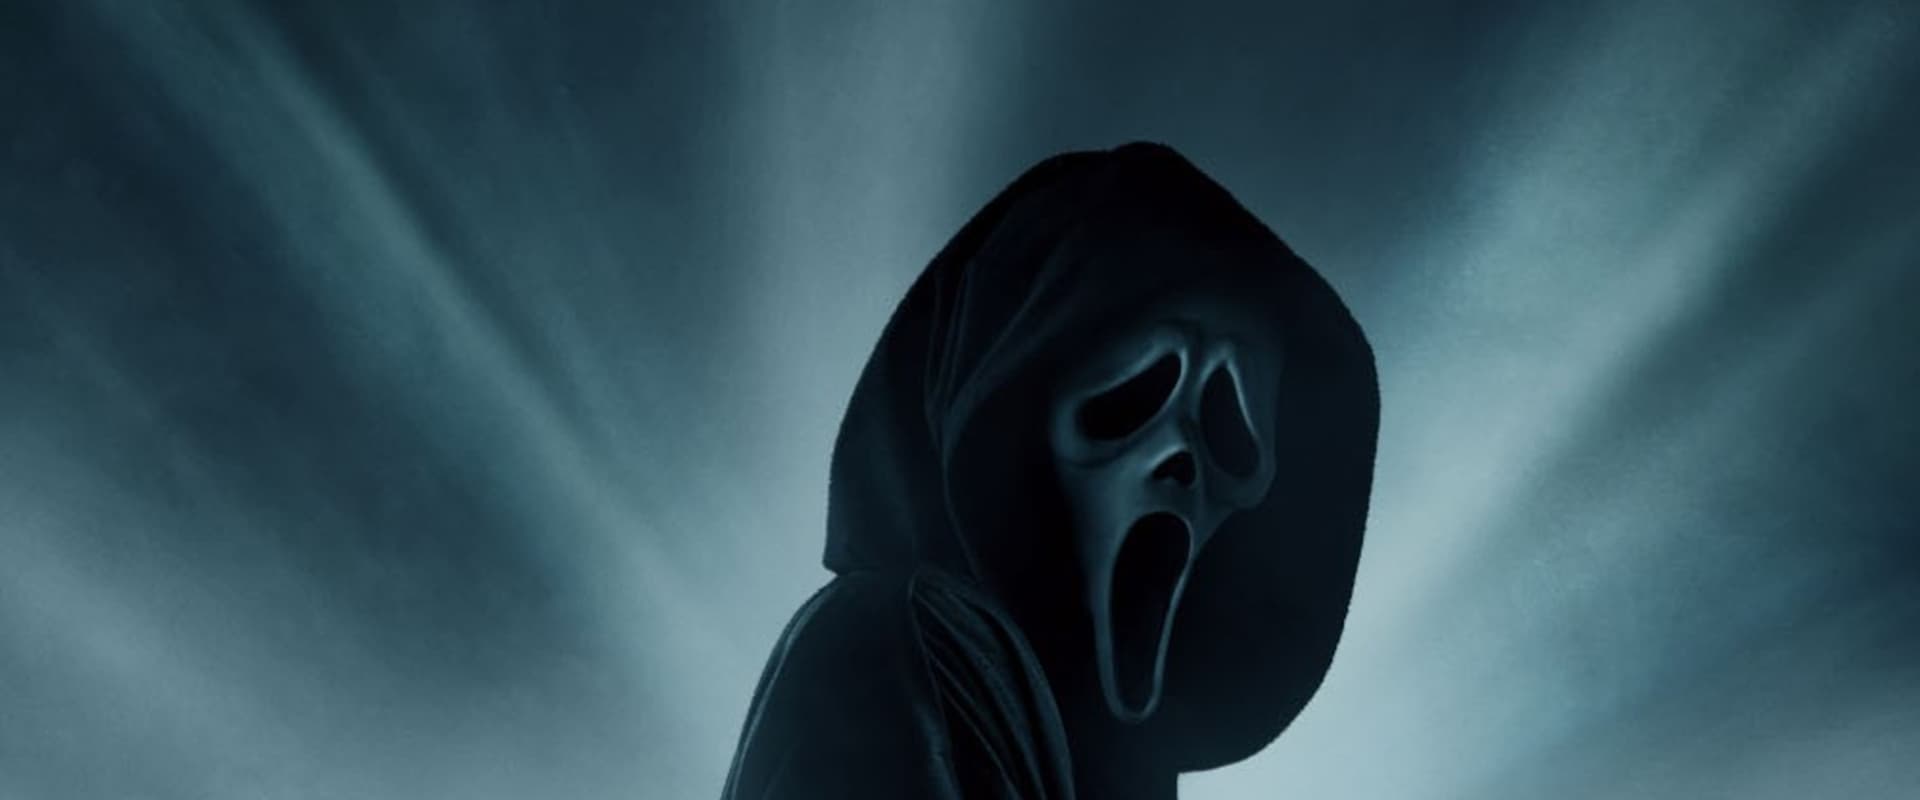 Scream 5 [HD] (2022)